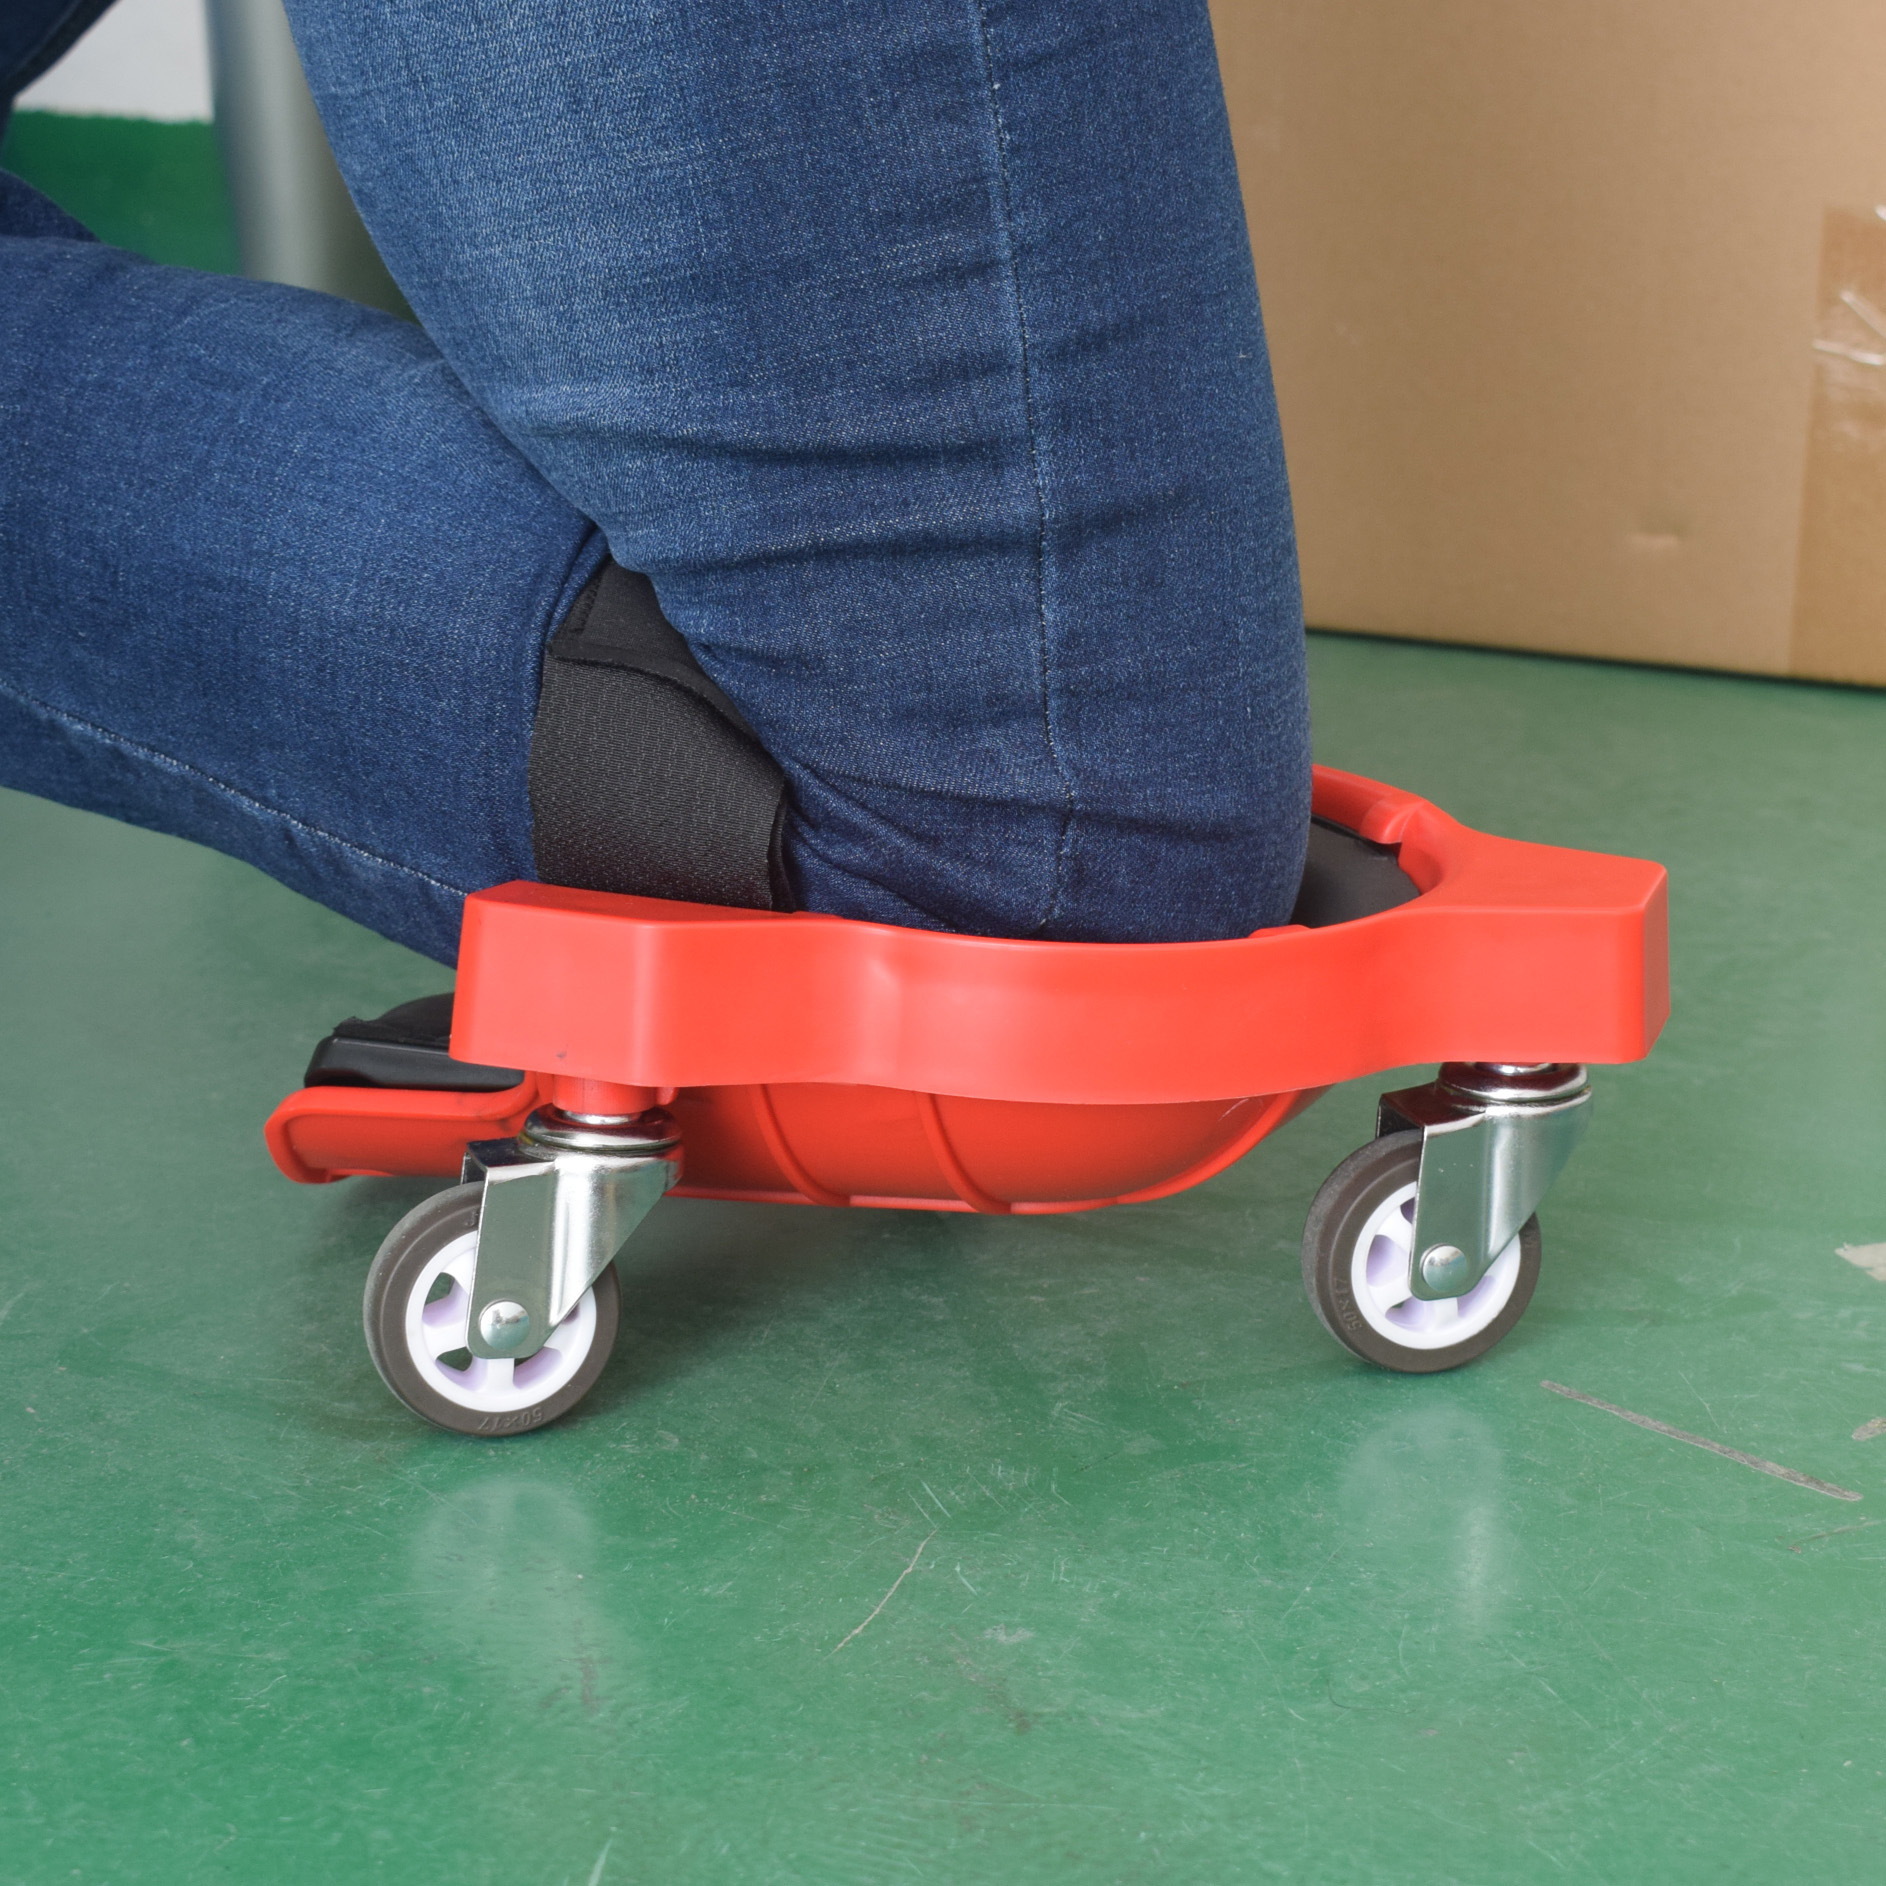 多功能滑动护膝 Rolling Knee Pad 方便省力万向轮移动木工跪垫详情8